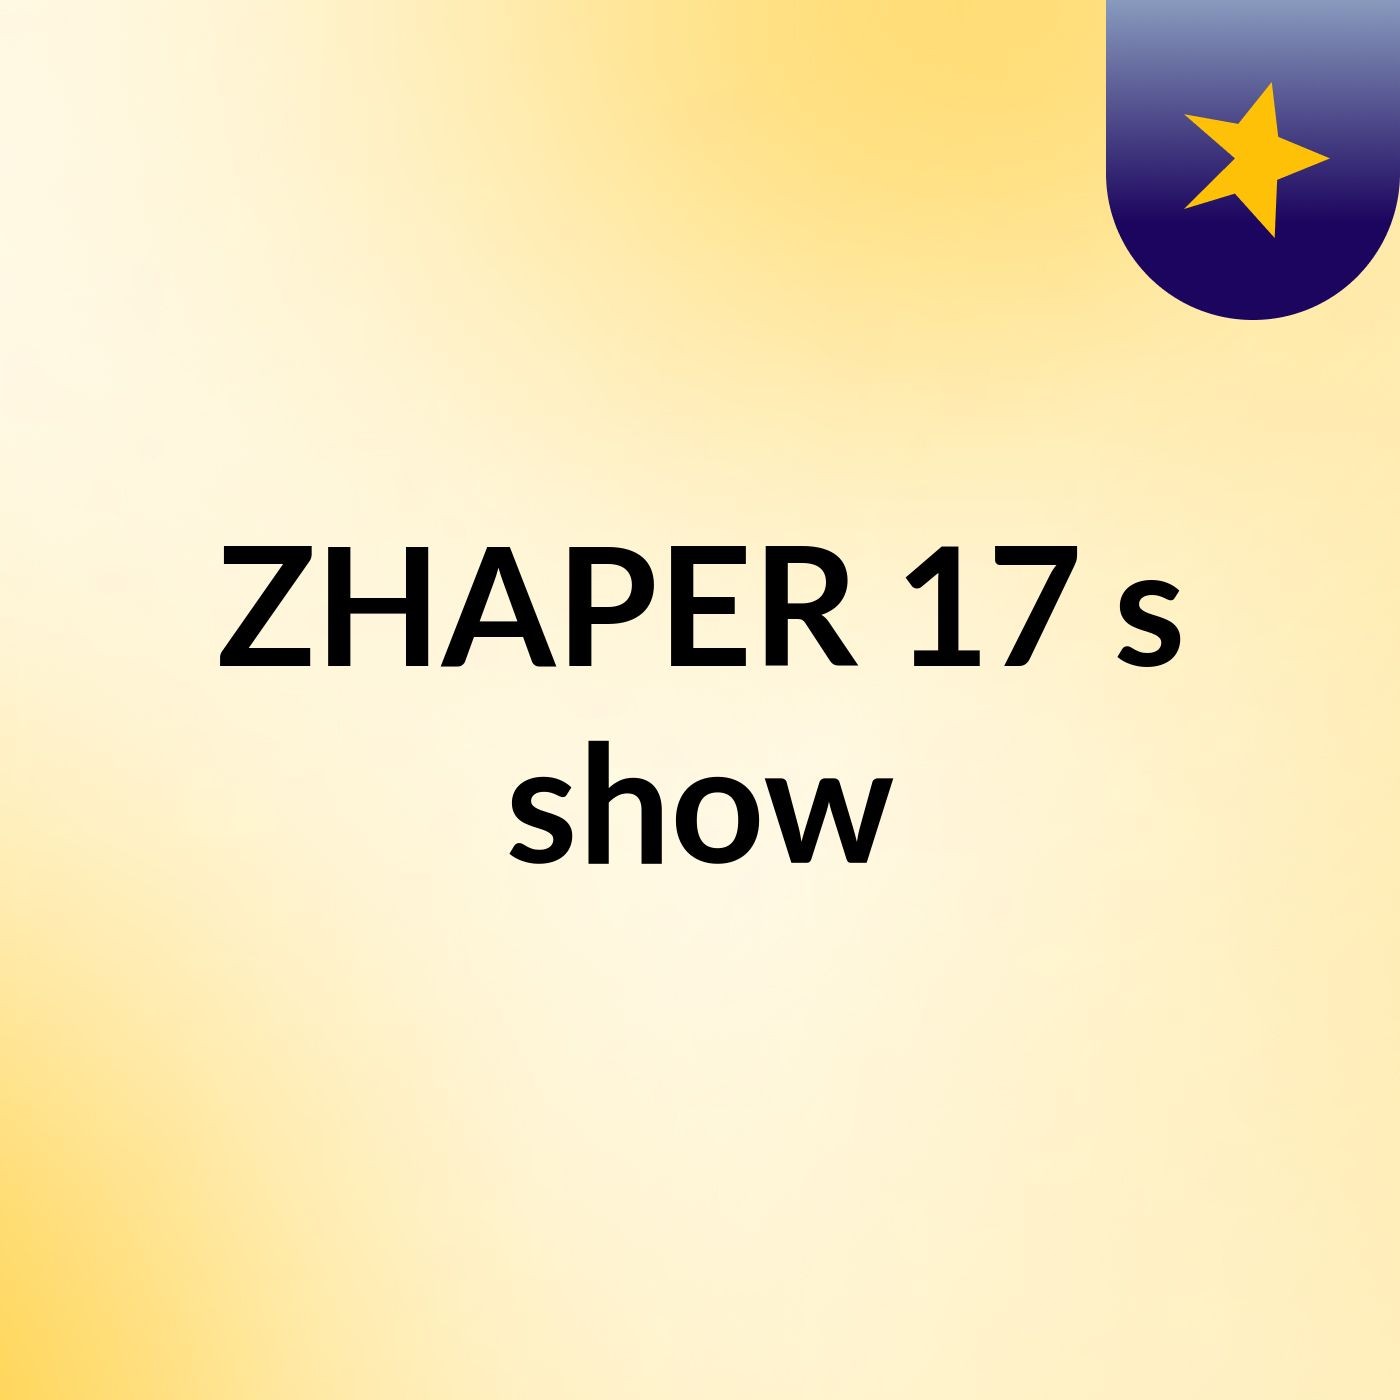 ZHAPER 17's show